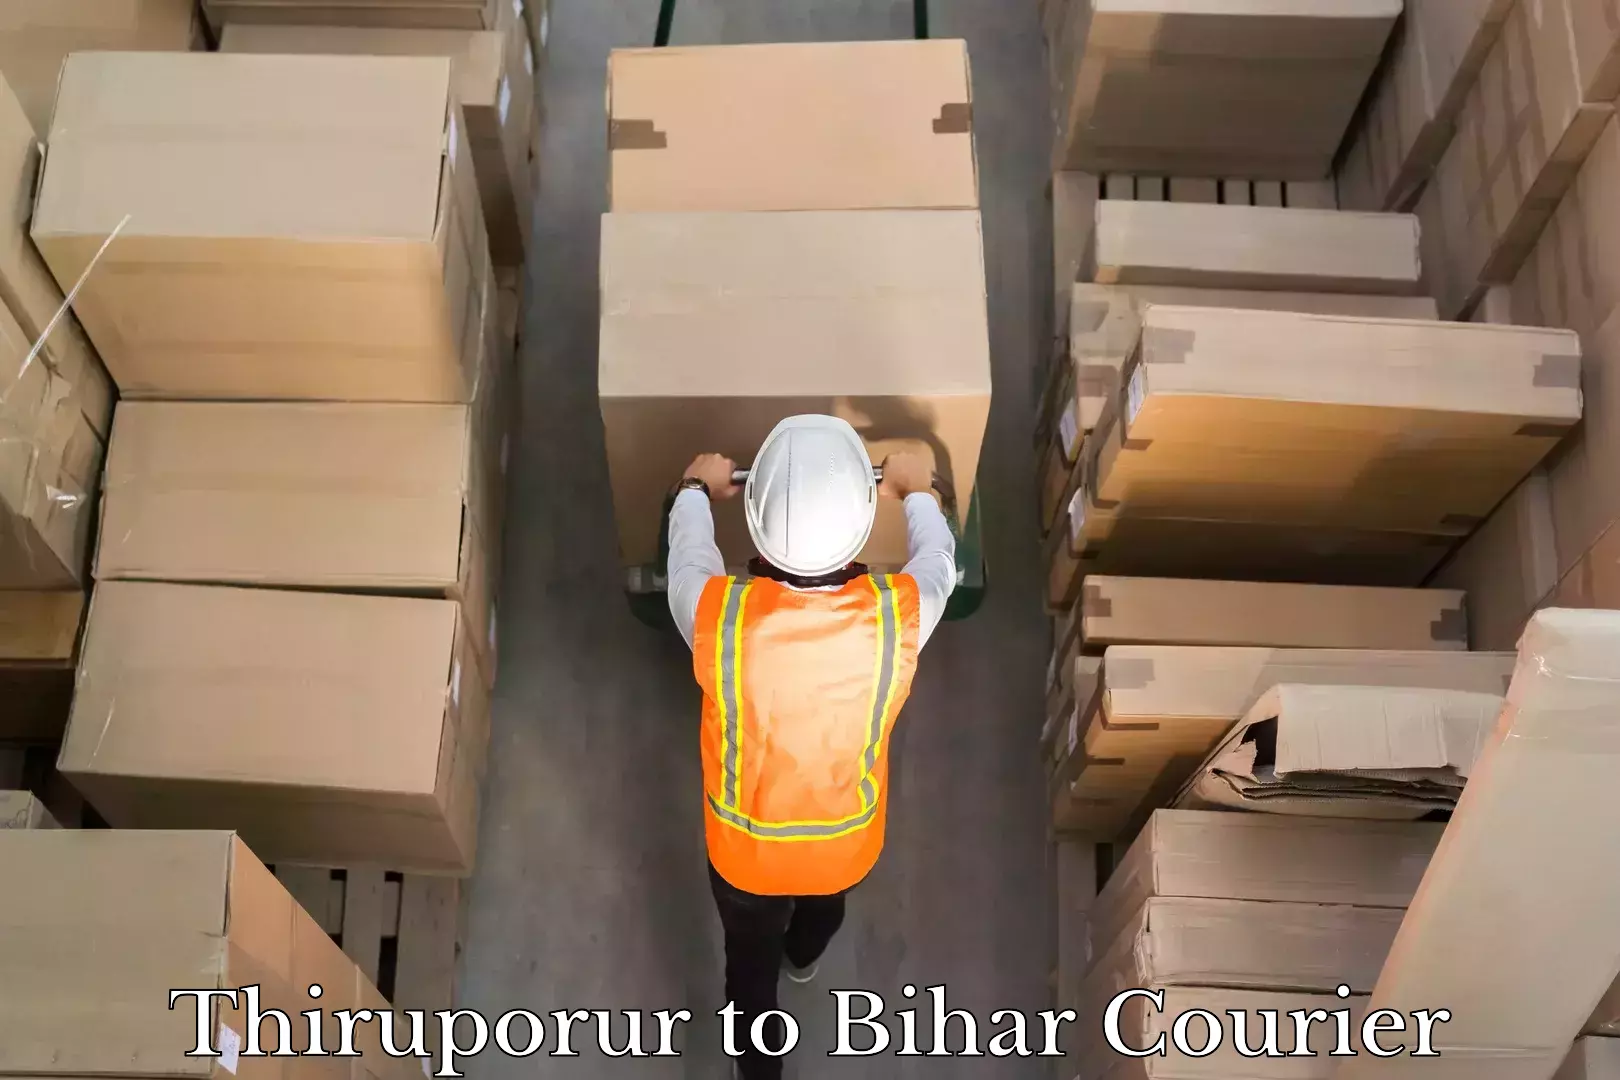 Flexible delivery scheduling Thiruporur to Bihar